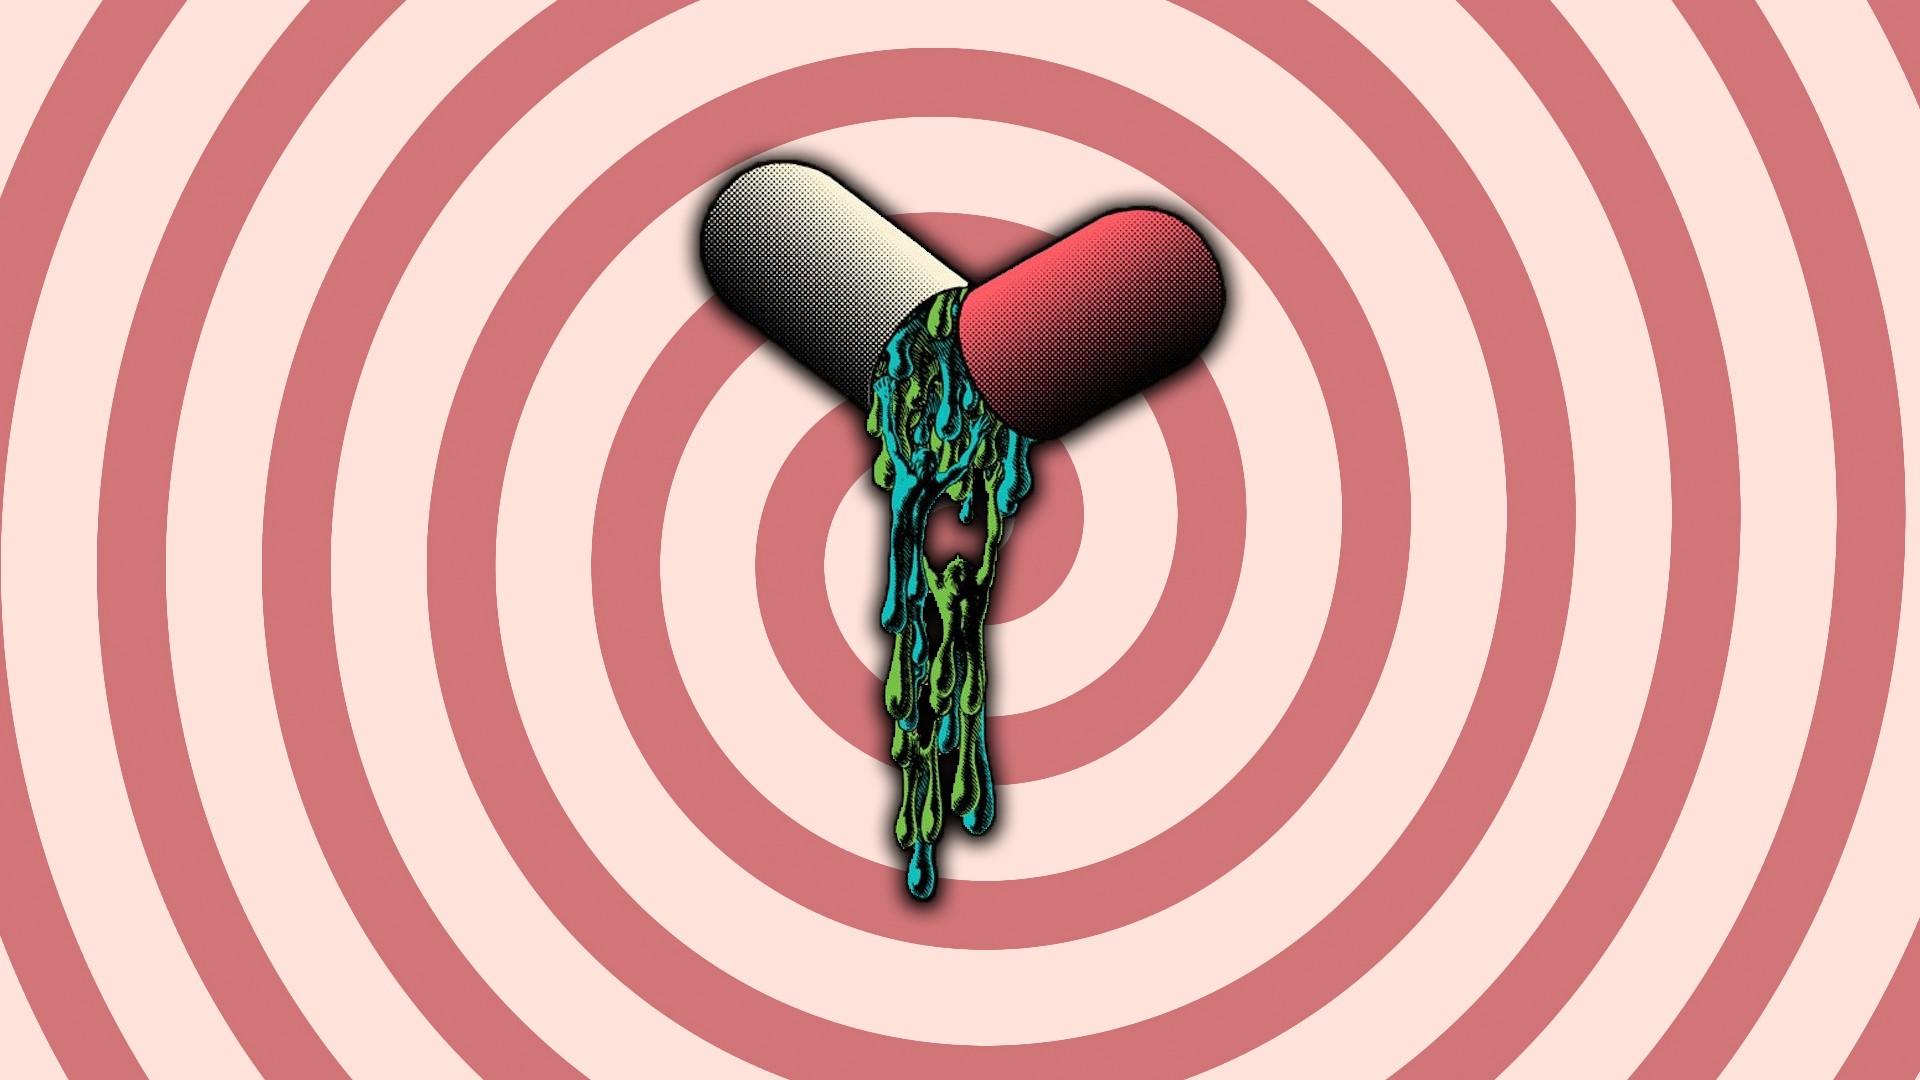 drugs spiral classic art pills wallpaper